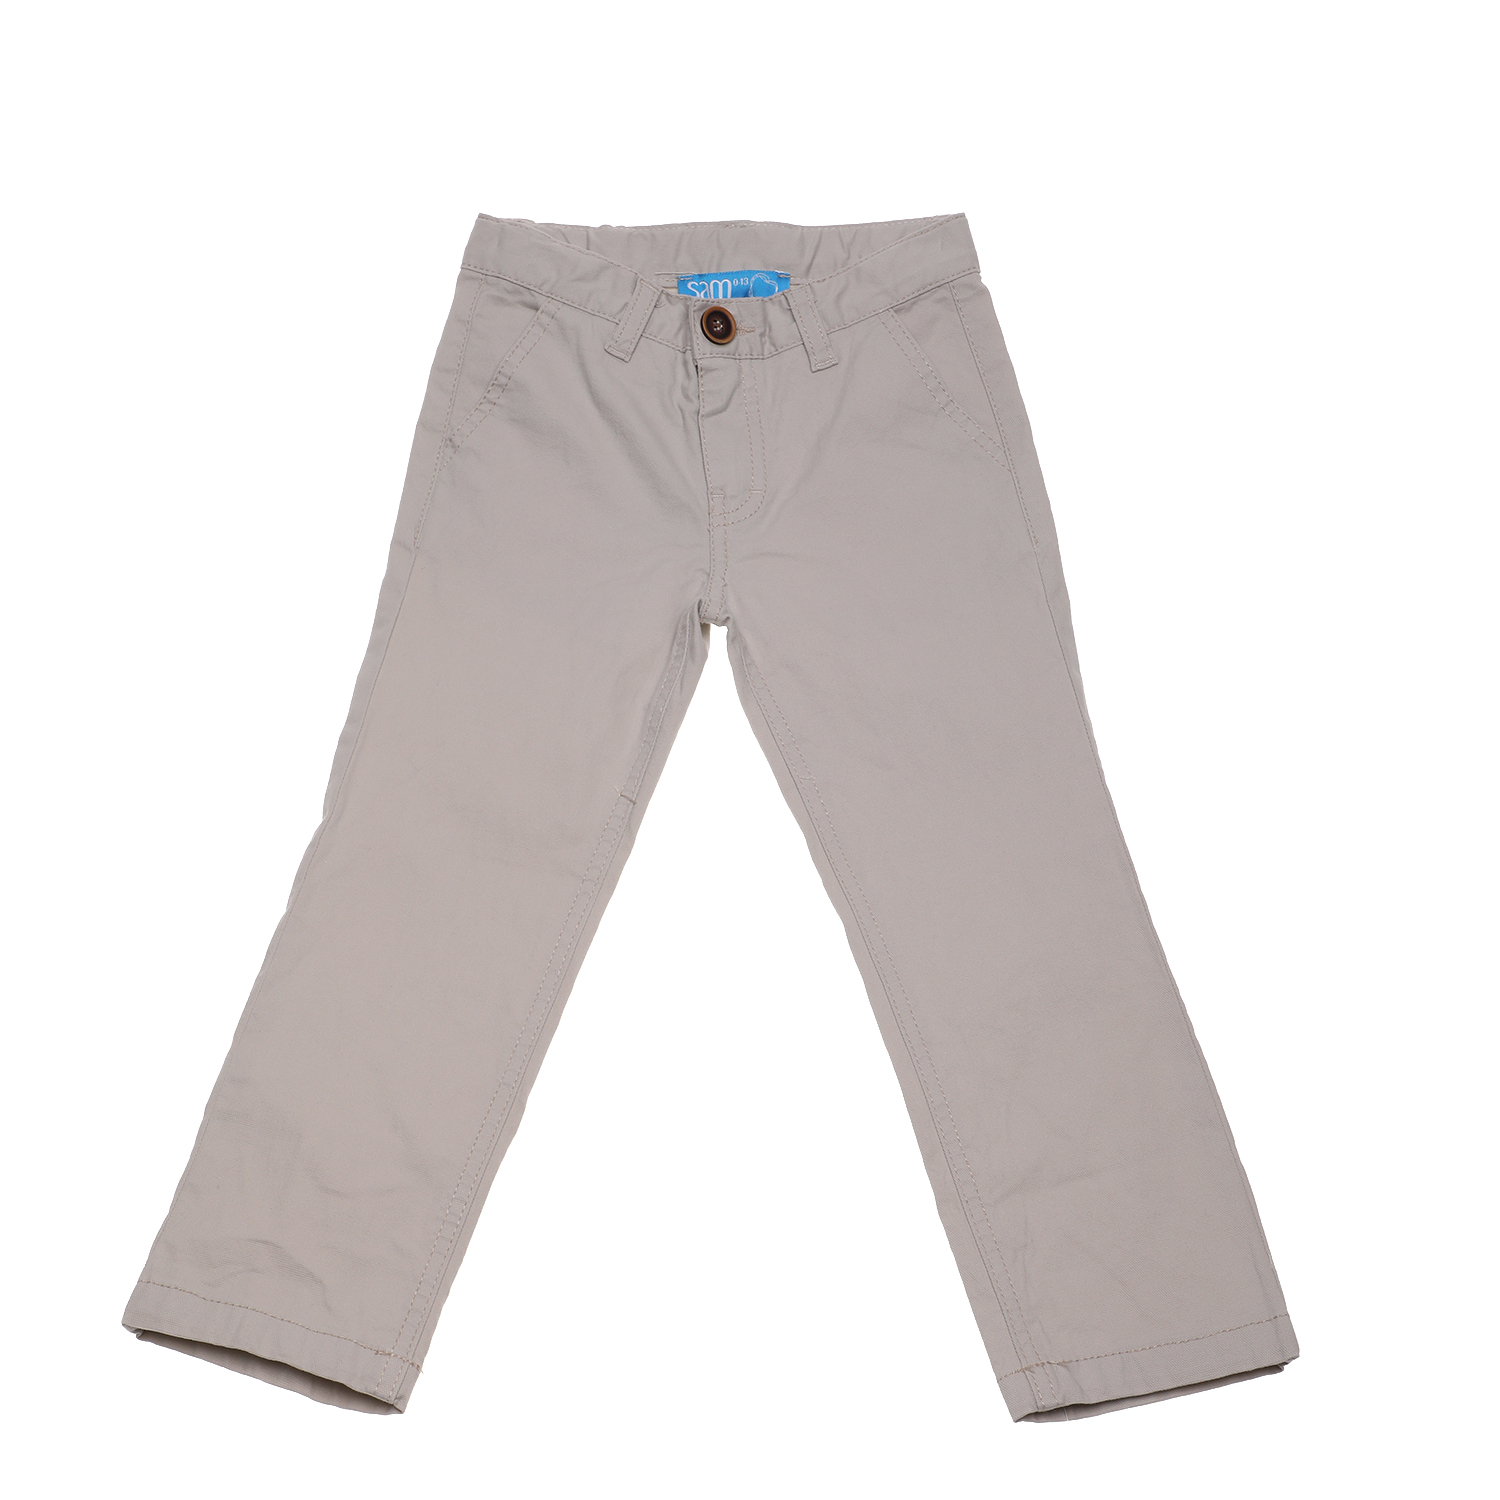 Παιδικά/Boys/Ρούχα/Παντελόνια SAM 0-13 - Παιδικό παντελόνι chino SAM 0-13 μπεζ